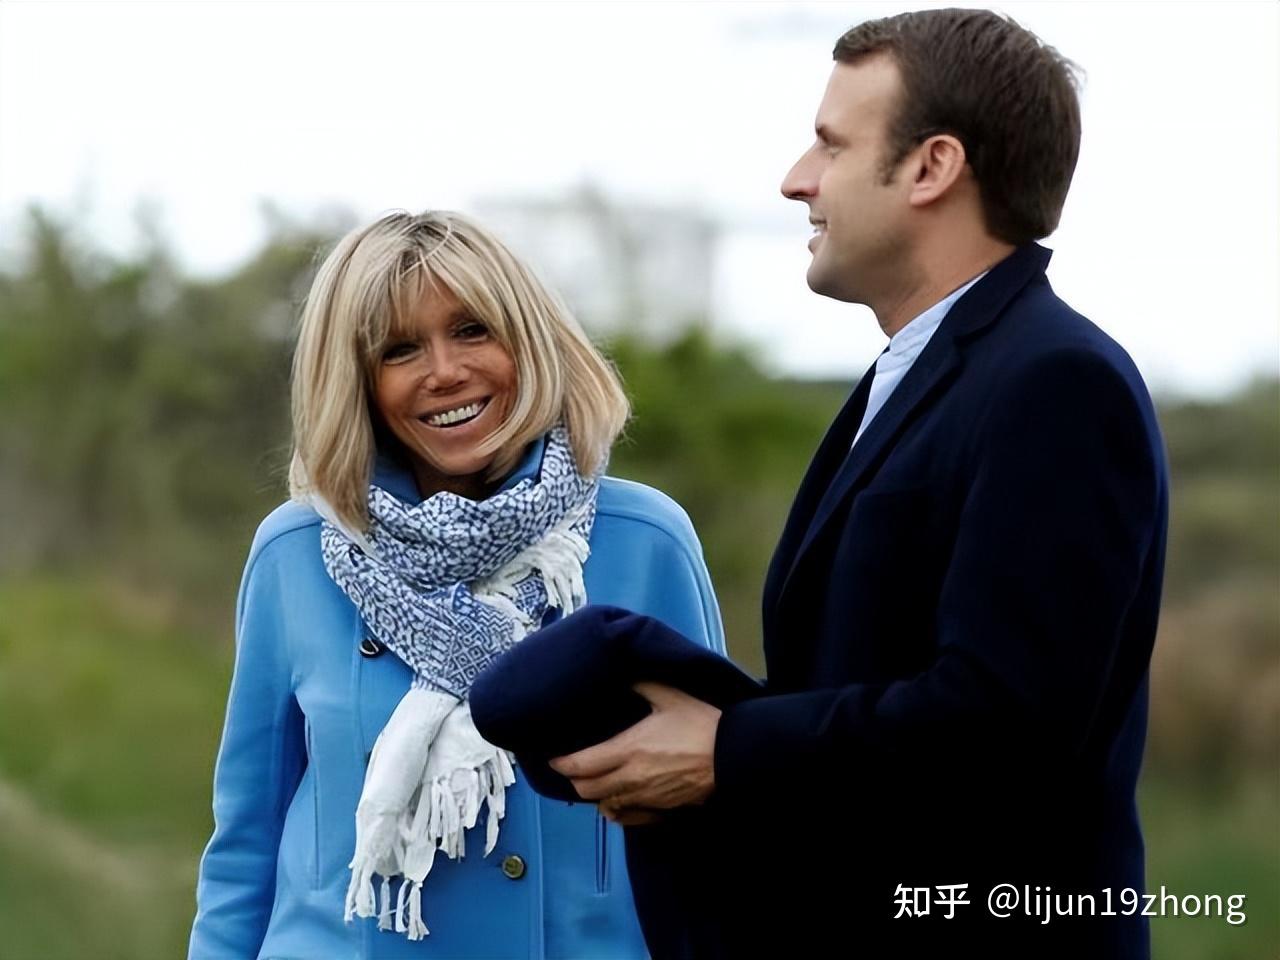 法国总统马克龙约见贾斯汀·比伯夫妇_凤凰网